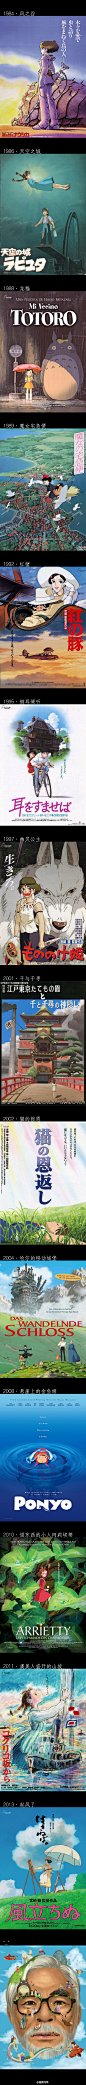 宫崎骏系列作品,1963-2013，动漫的世界中感谢有你的这半个世纪。